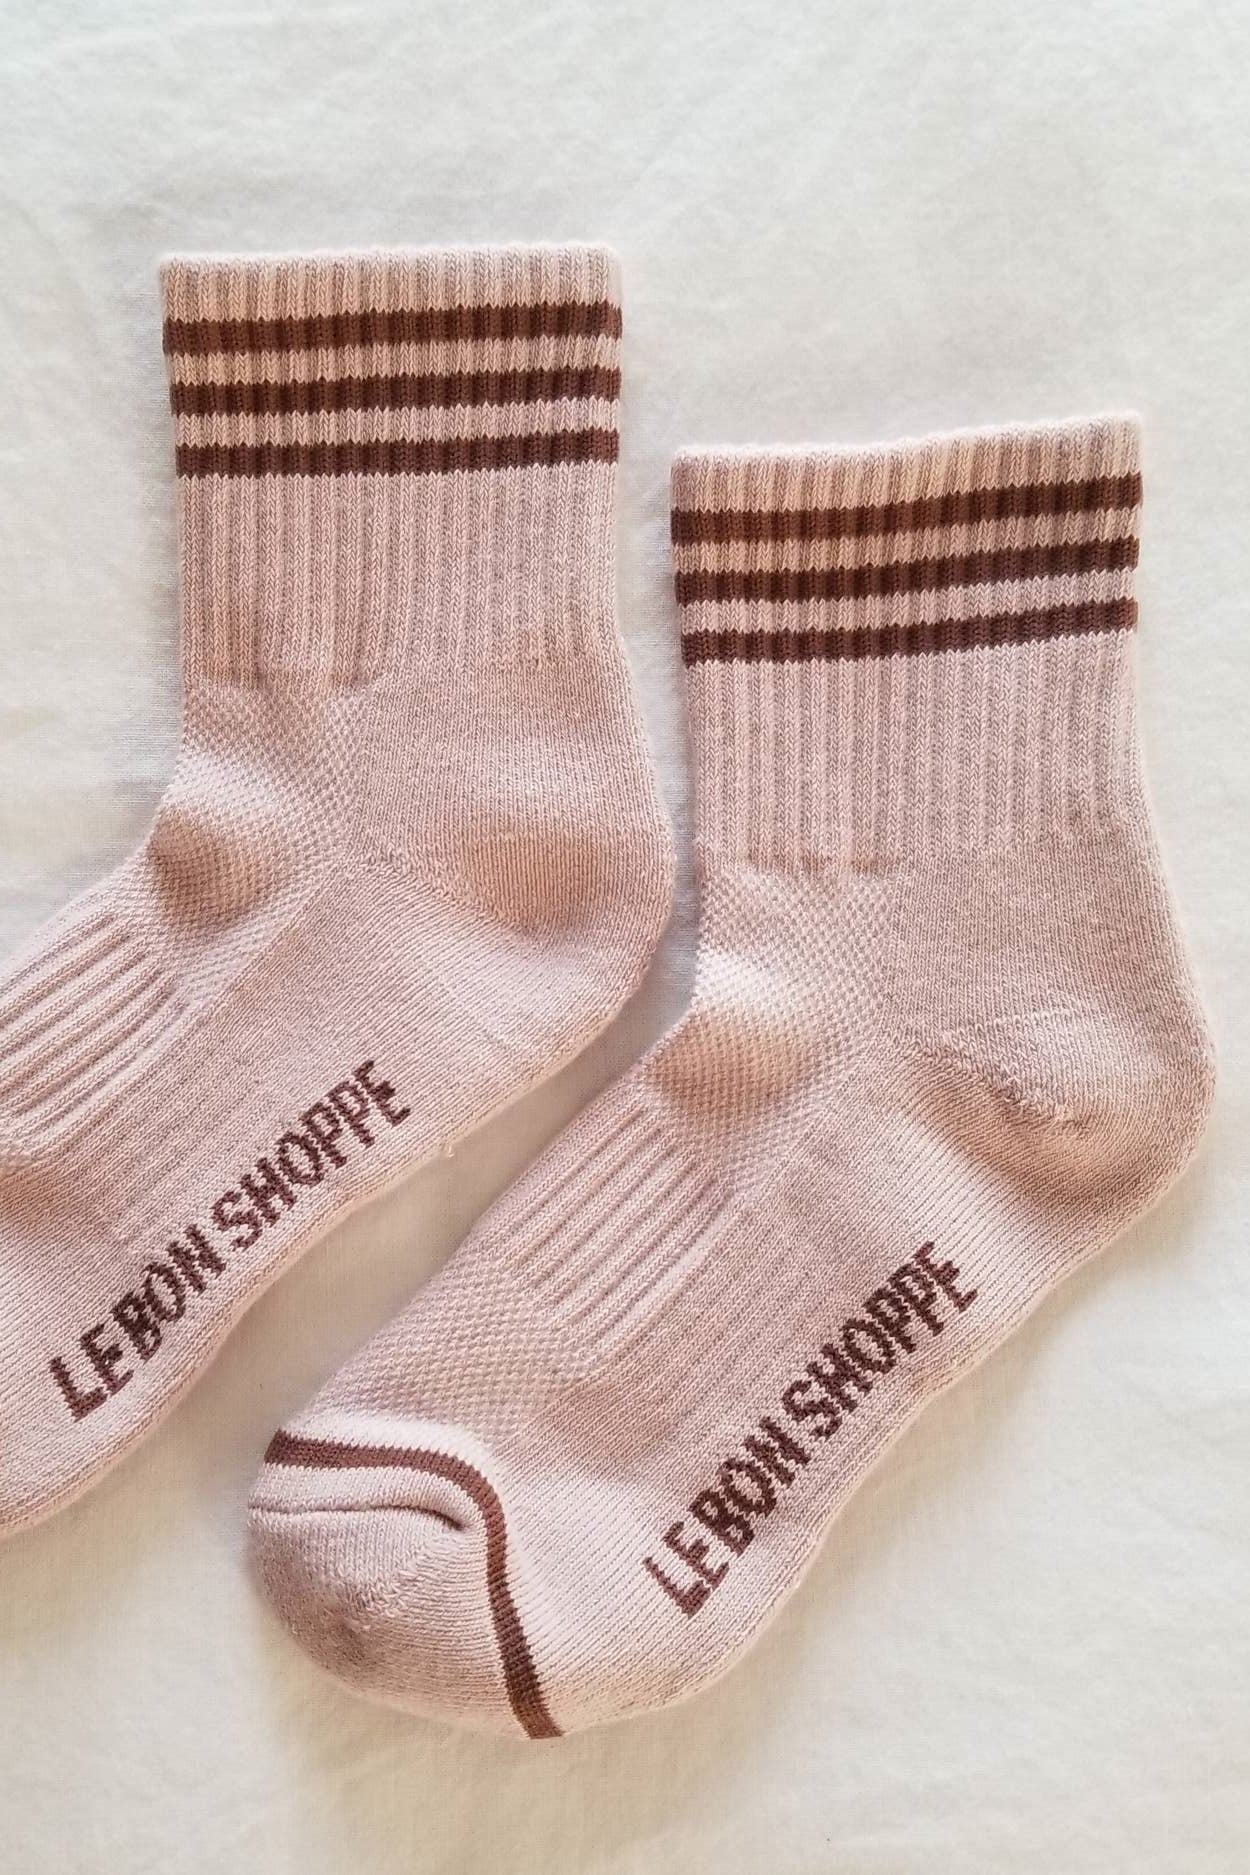 Le Bon - Girlfriend Socks